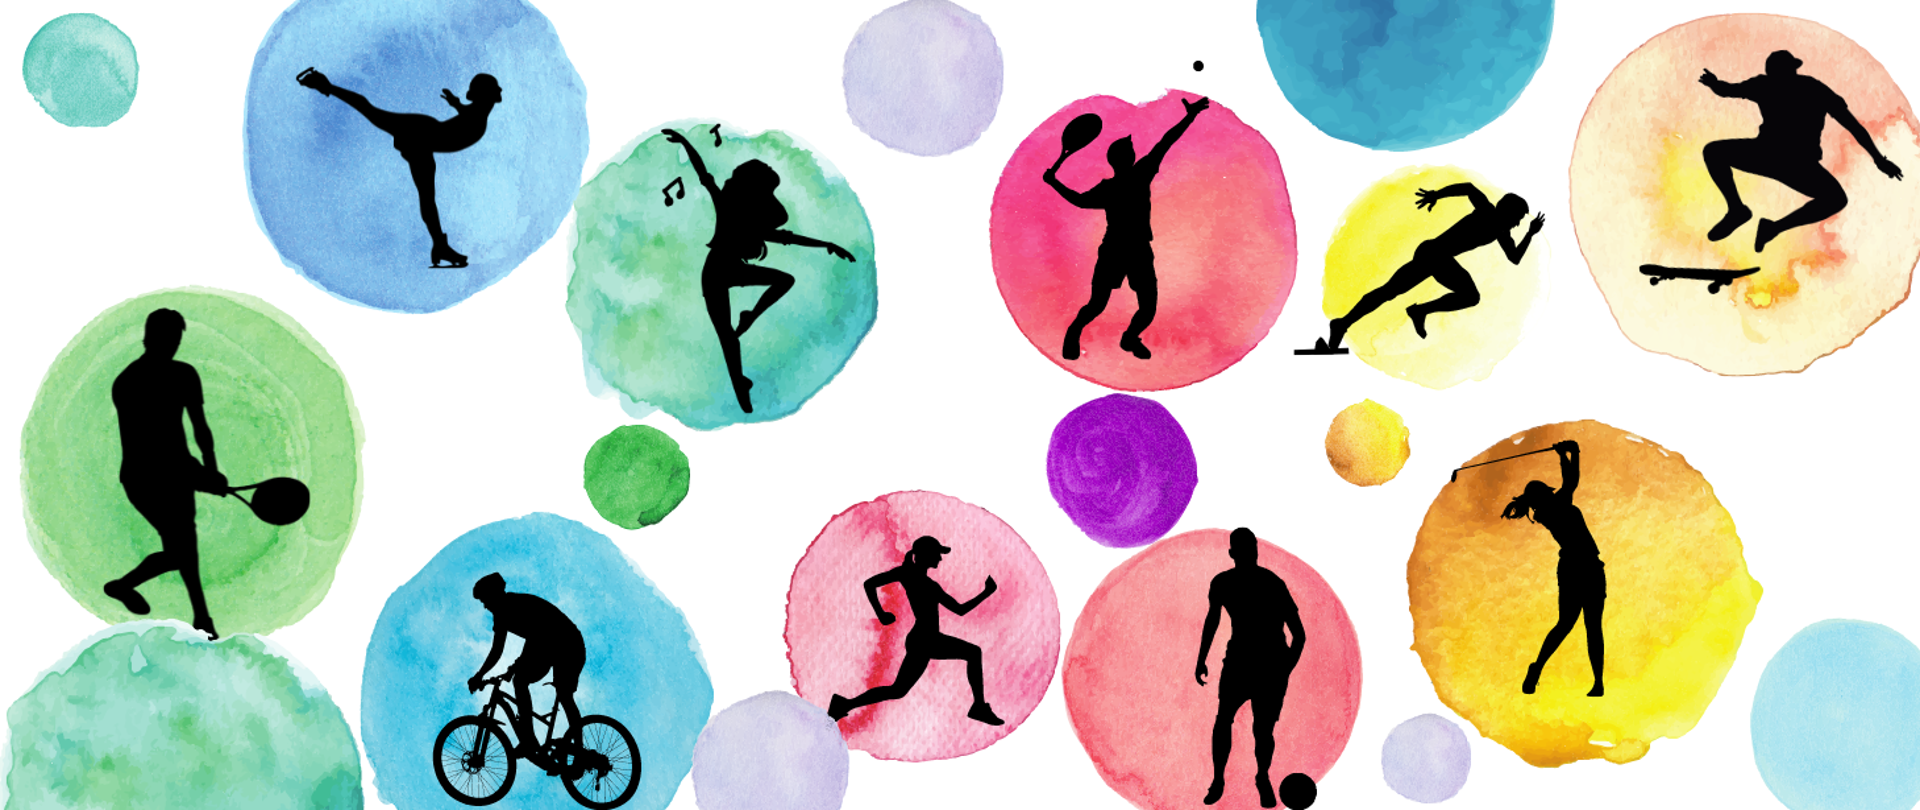 Grafiki przedstawiające sylwetki ludzkie podczas uprawiania sportów - łyżwiarstwo, piłka nożna, tenis, hokej, jazda na rowerze, biegi